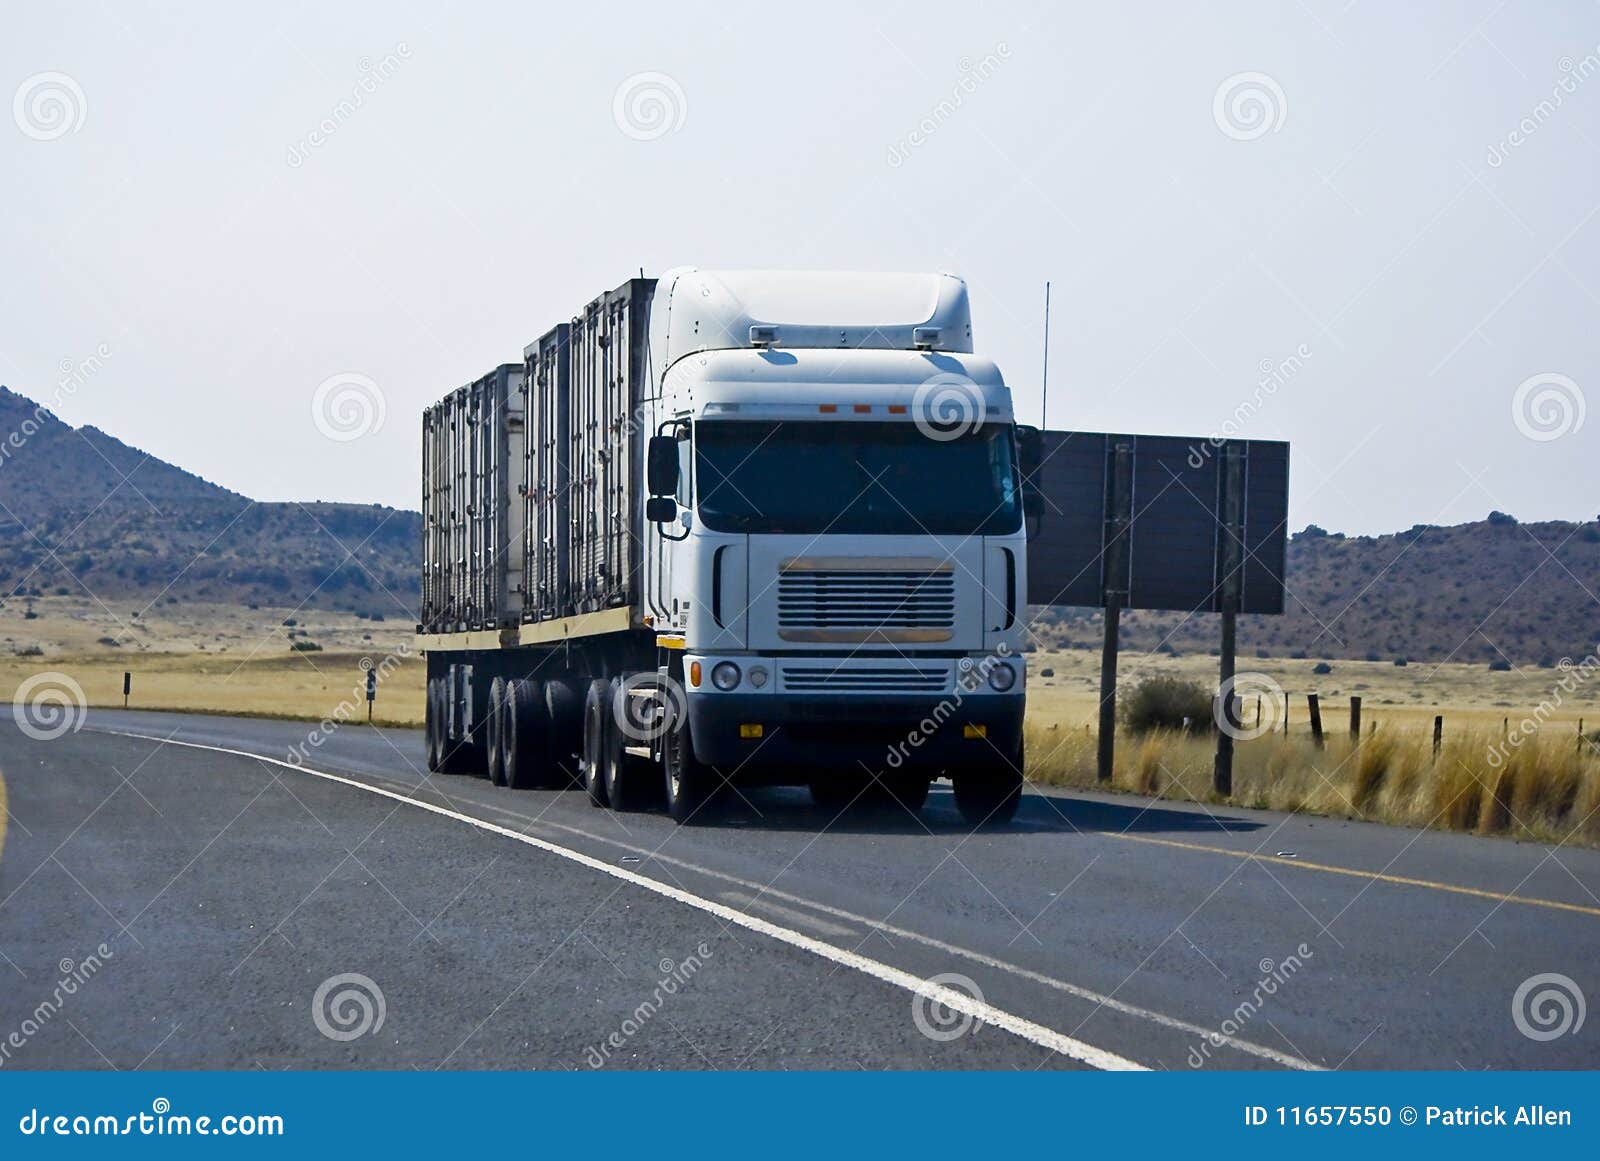 heavy duty, cross country, long haul truck